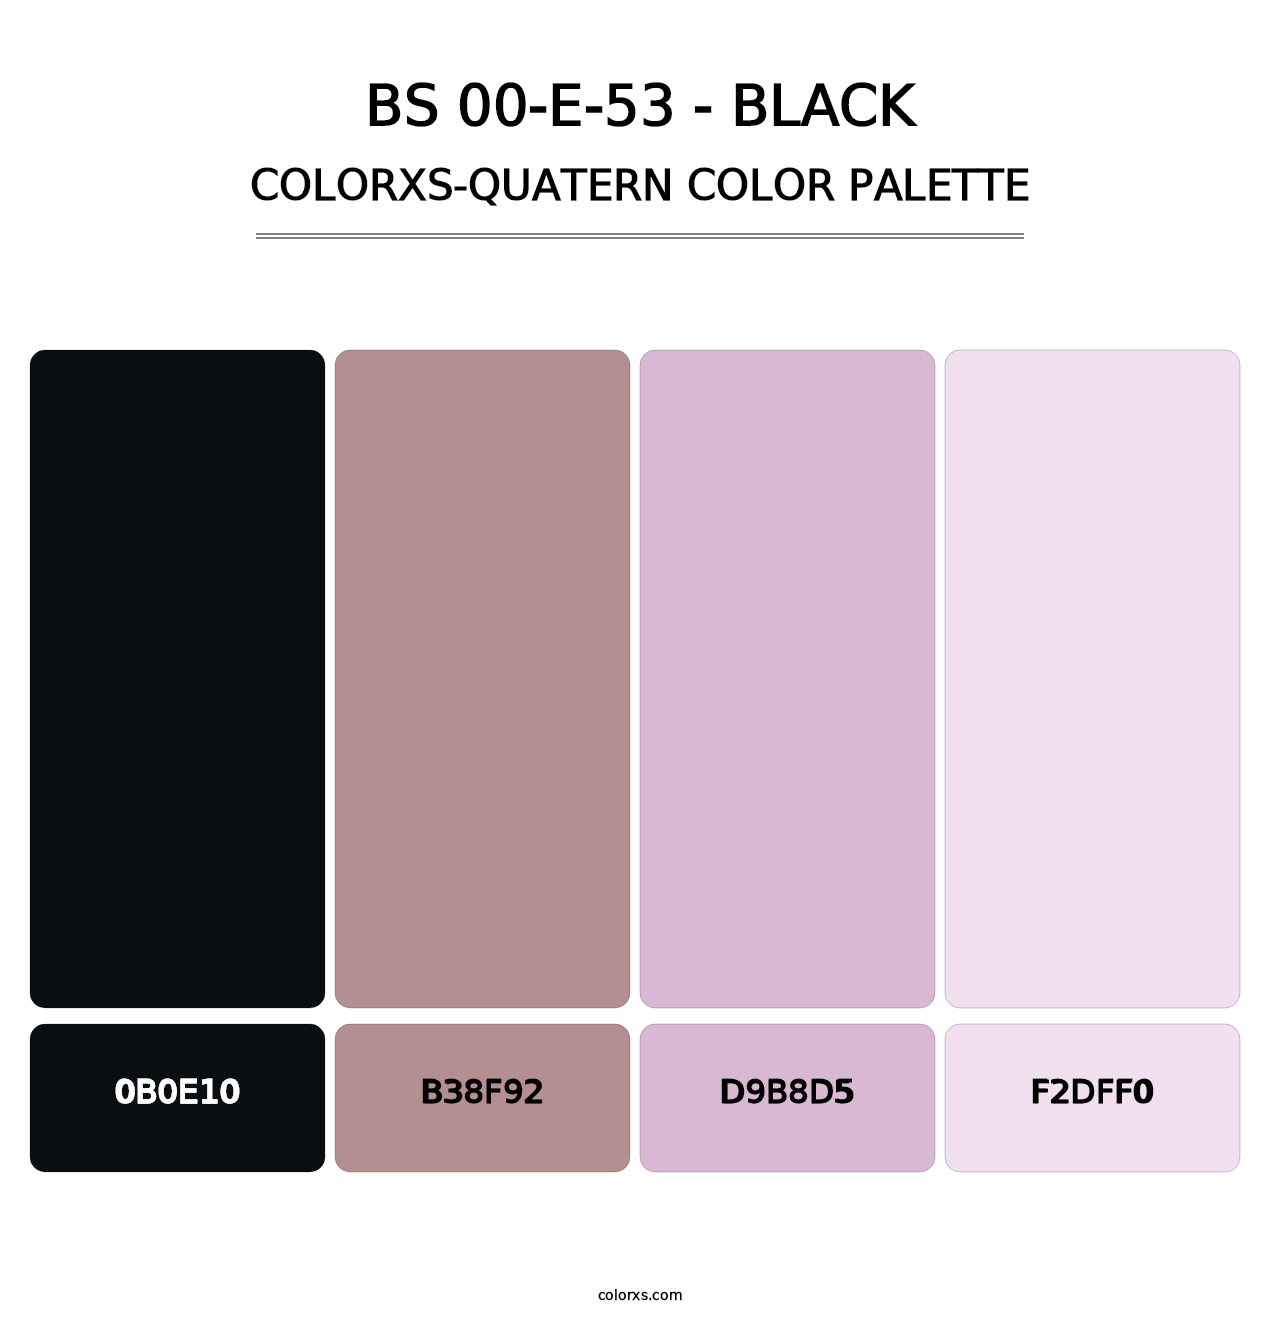 BS 00-E-53 - Black - Colorxs Quatern Palette